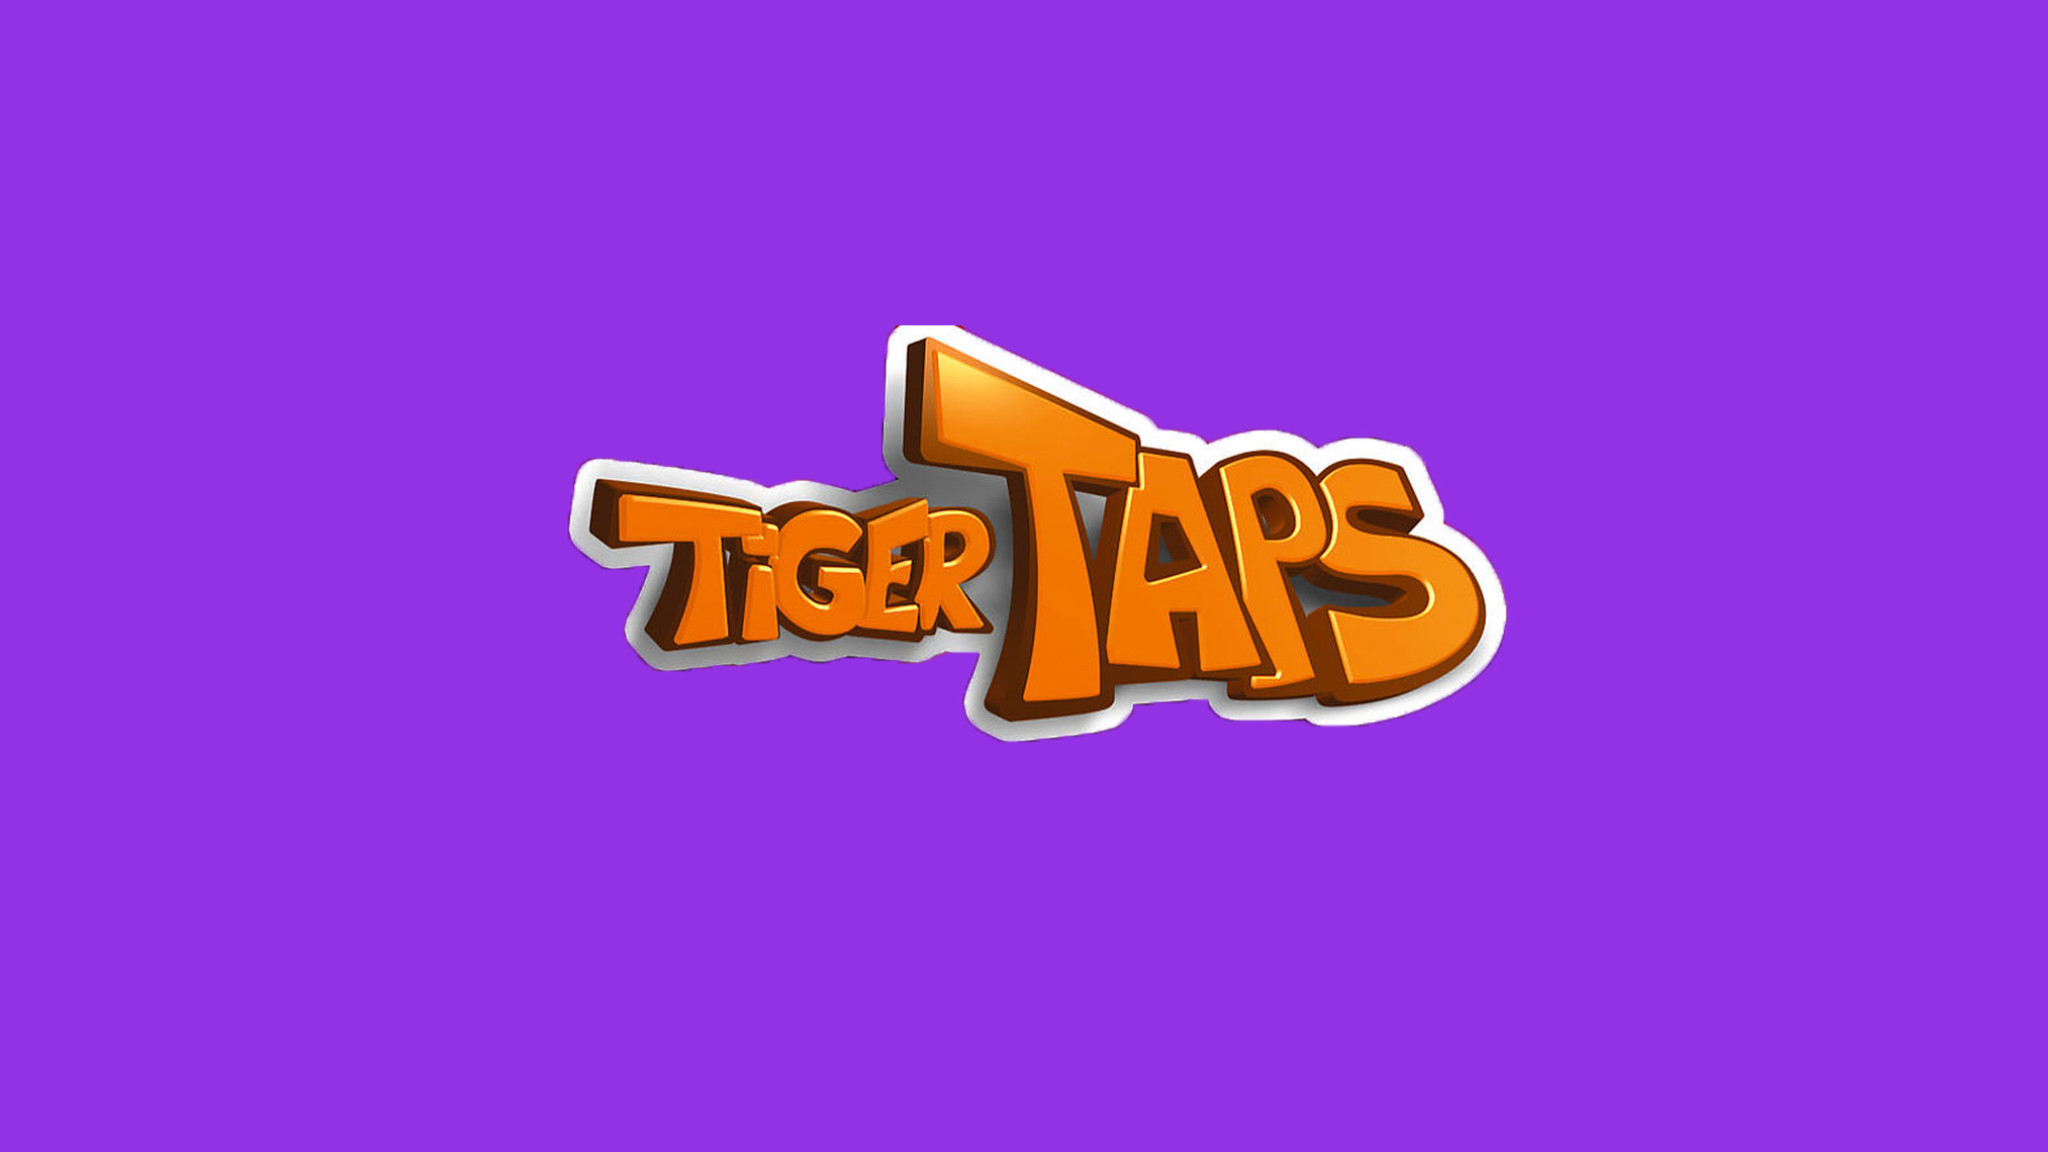 Tiger Taps